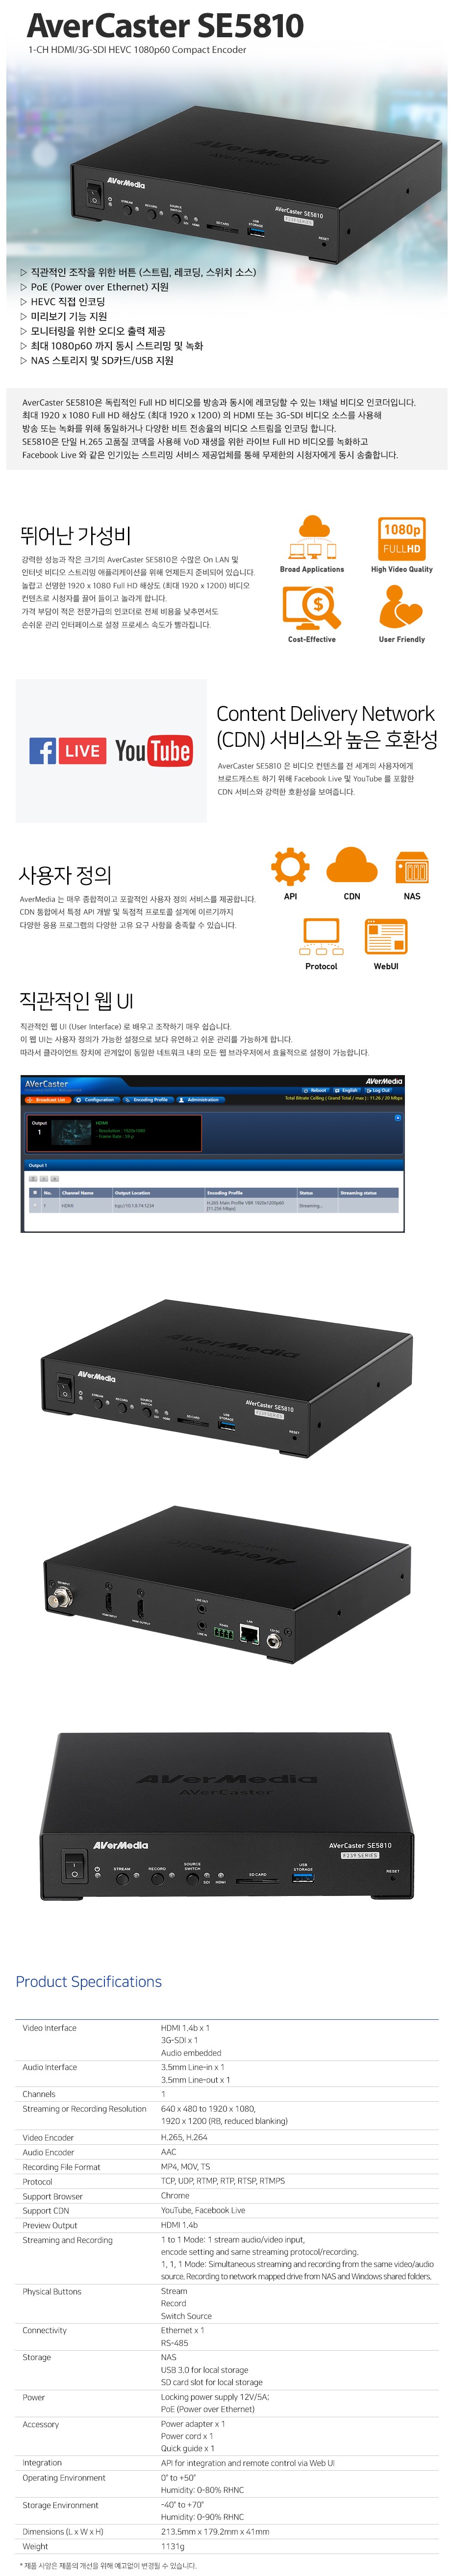 1채널 비디오 인코더 레코딩 3G-SDI입력지원SE5810